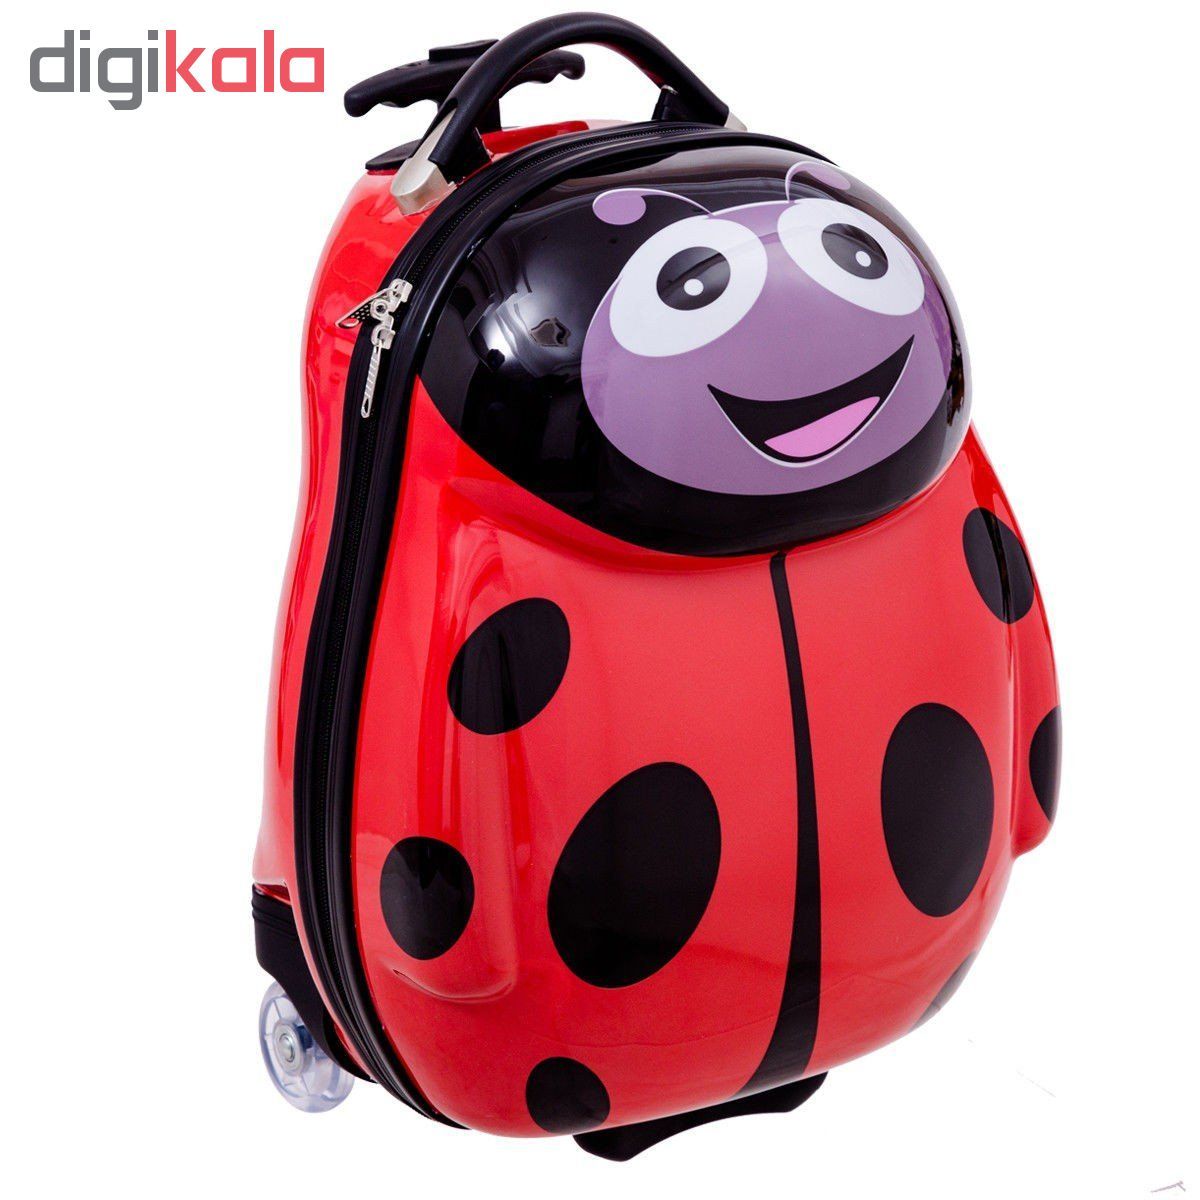 چمدان کودک مدل ladybird